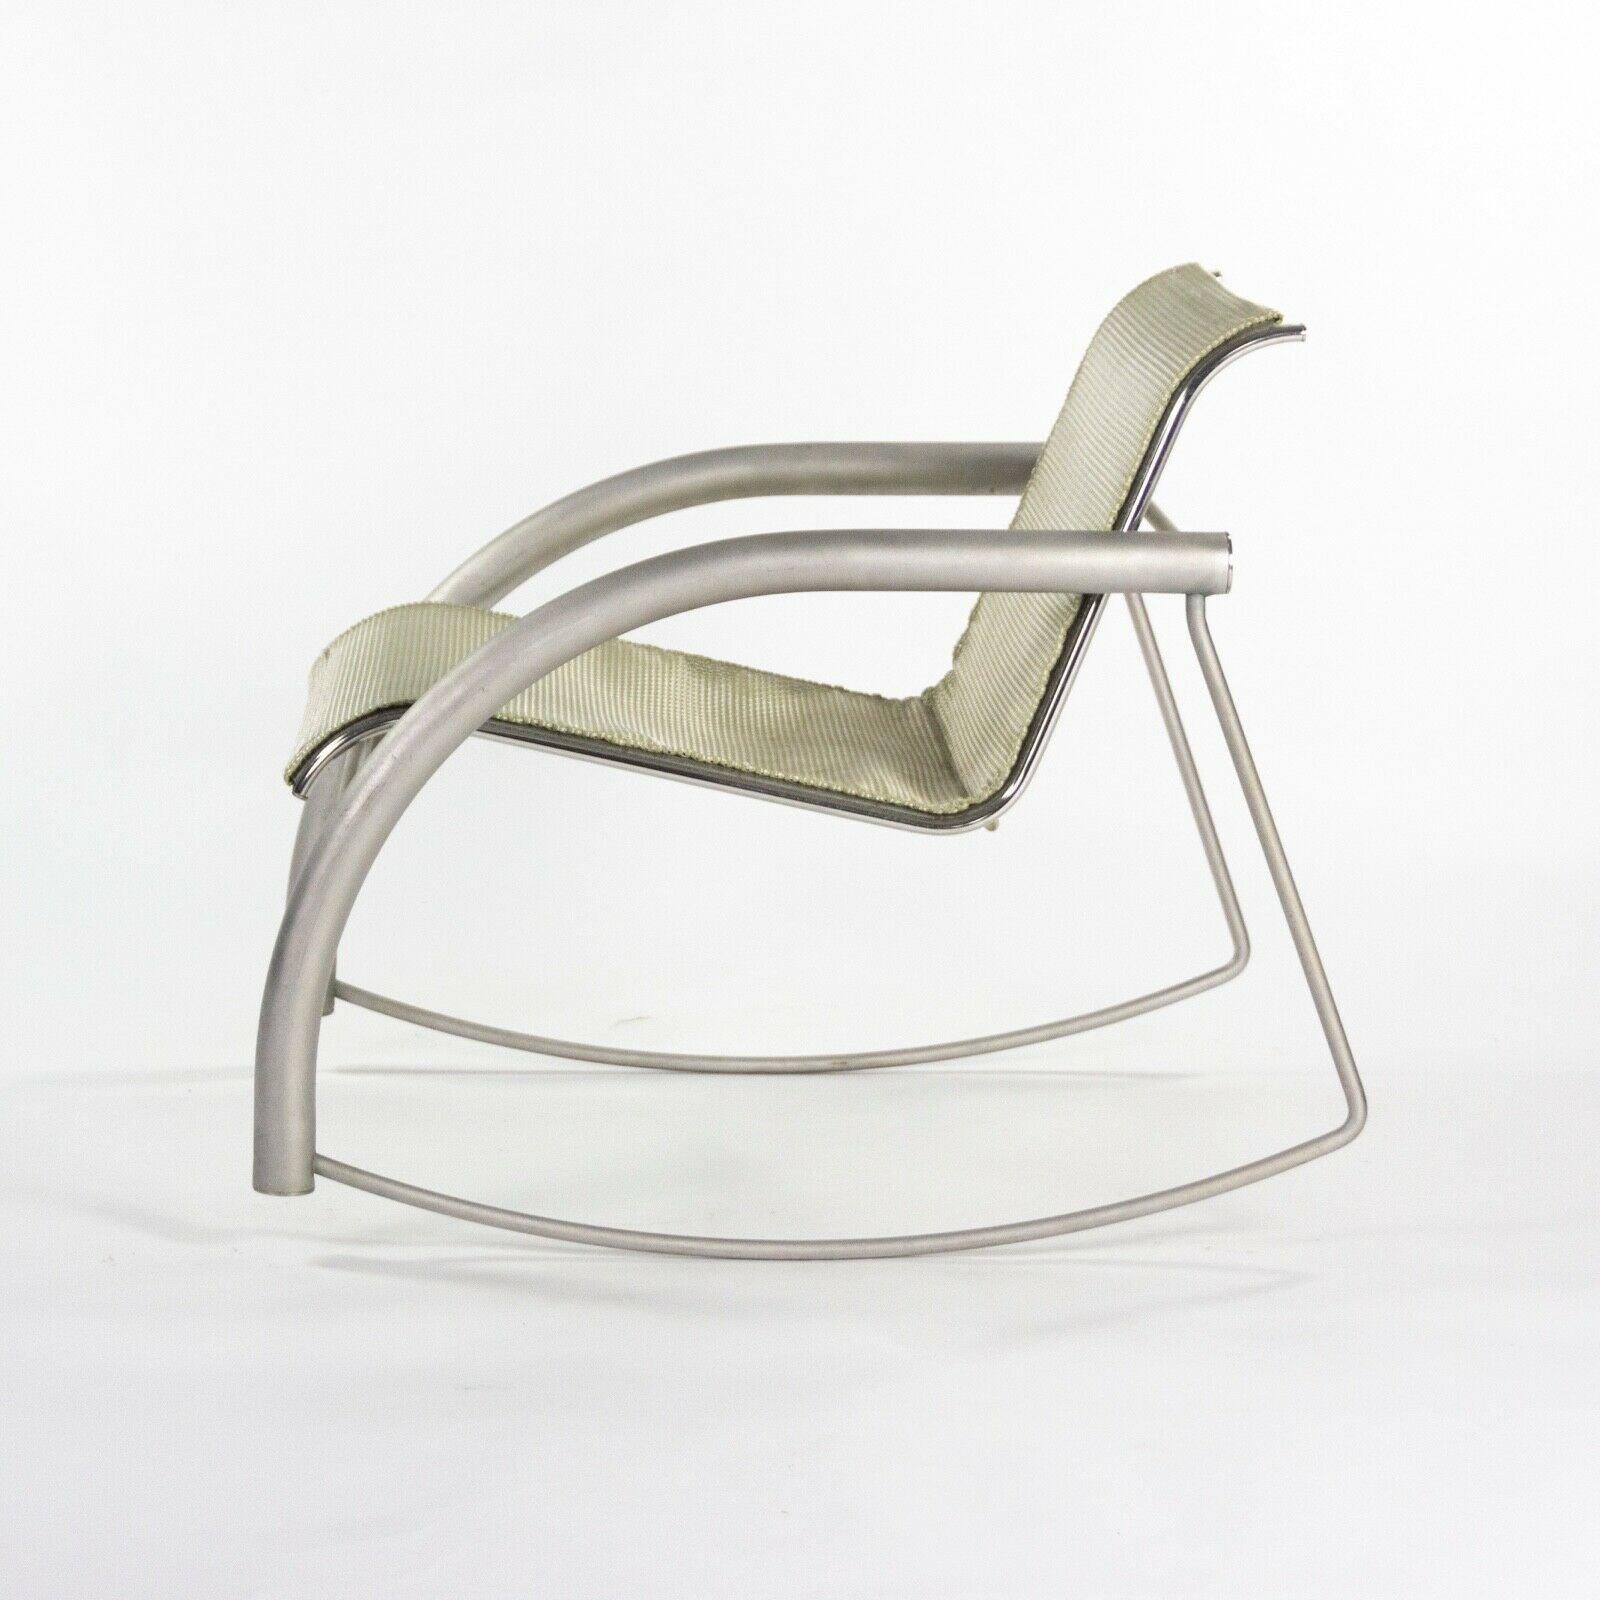 Prototype de chaise à bascule Richard Schultz 2002 Collection en acier inoxydable et maille 1